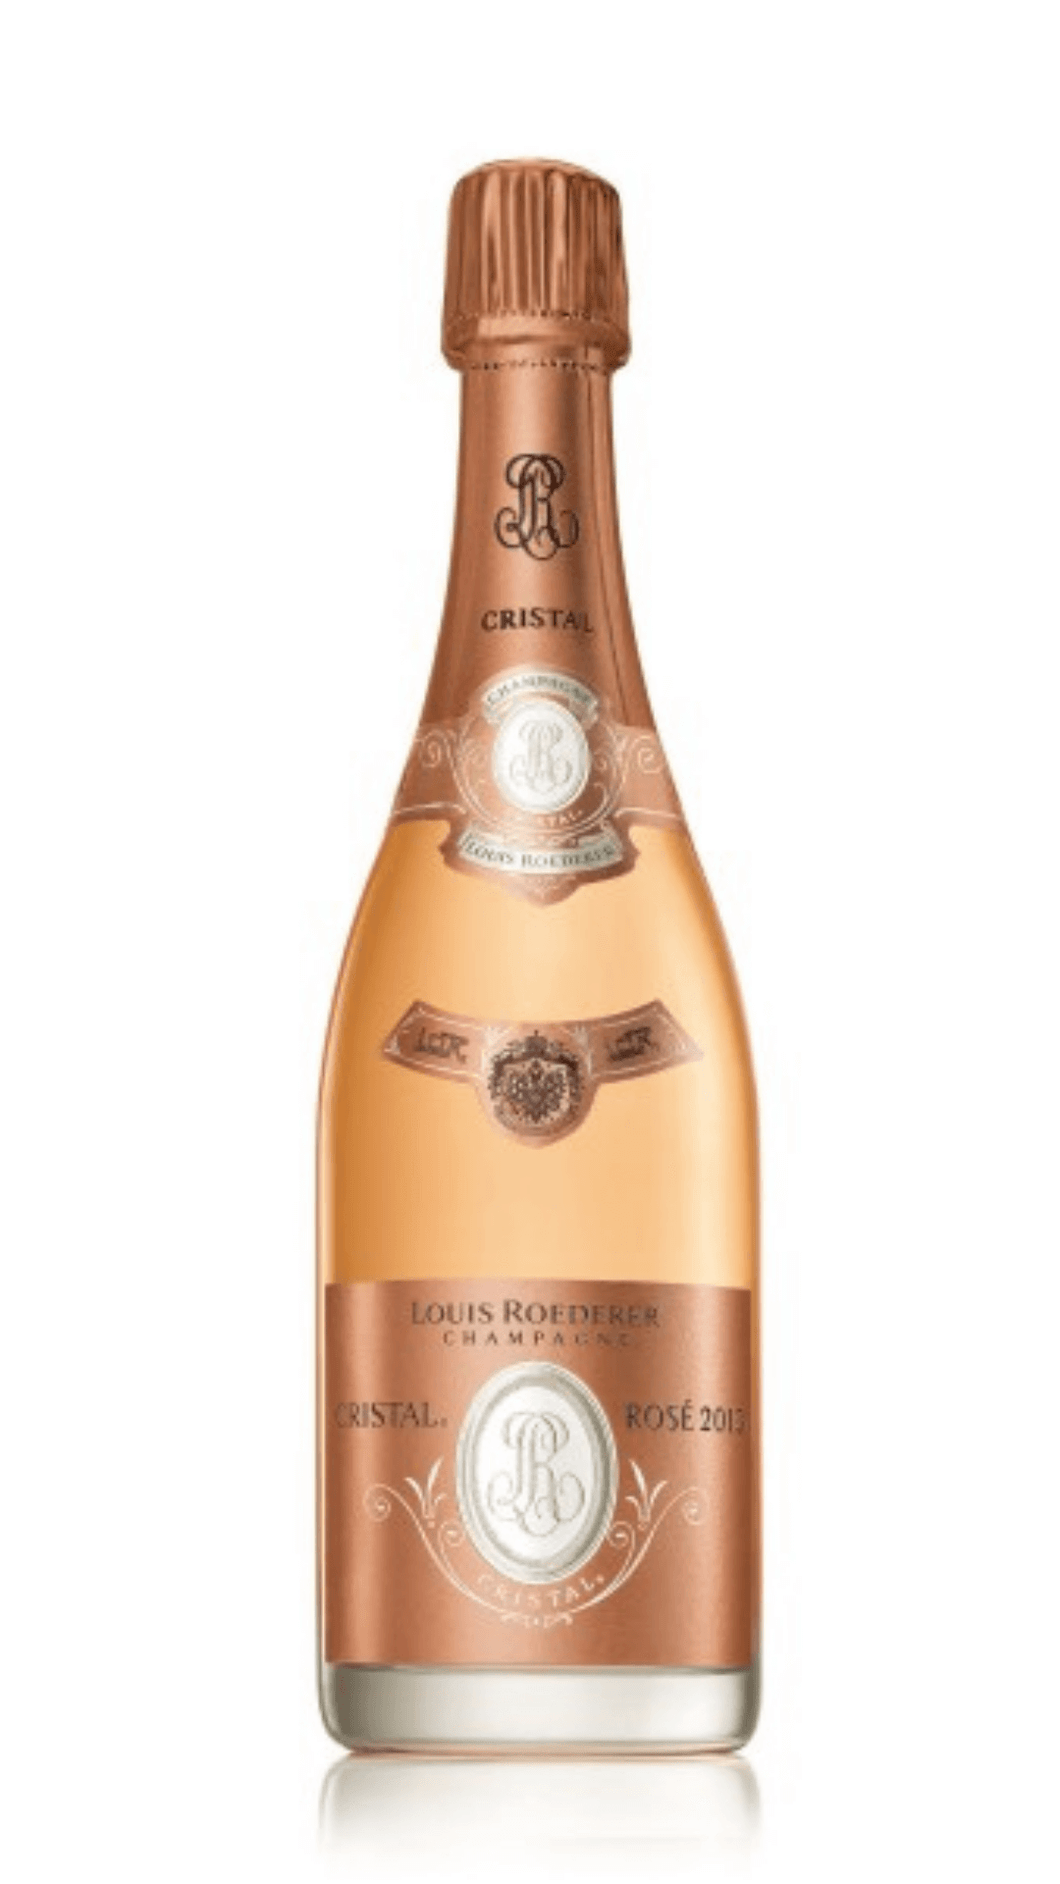 Champagner Cristal Rosé 2013 Louis Roederer